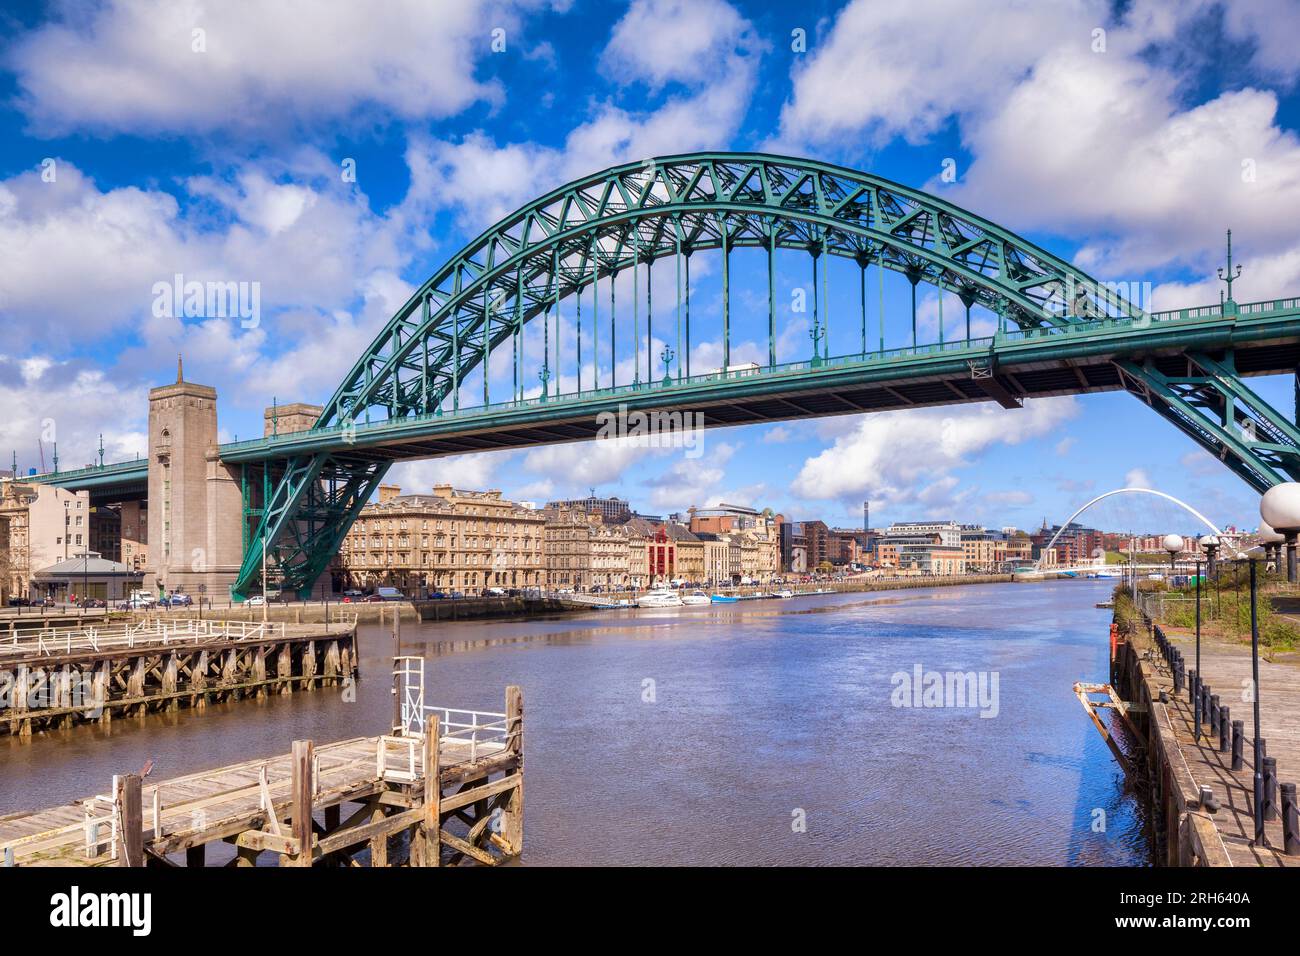 Newcastle Upon Tyne, Großbritannien - die Tyne Bridge und der Fluss Tyne, im Nordosten Englands, Großbritannien, an einem hellen Frühlingstag, mit historischem Ufer ... Stockfoto